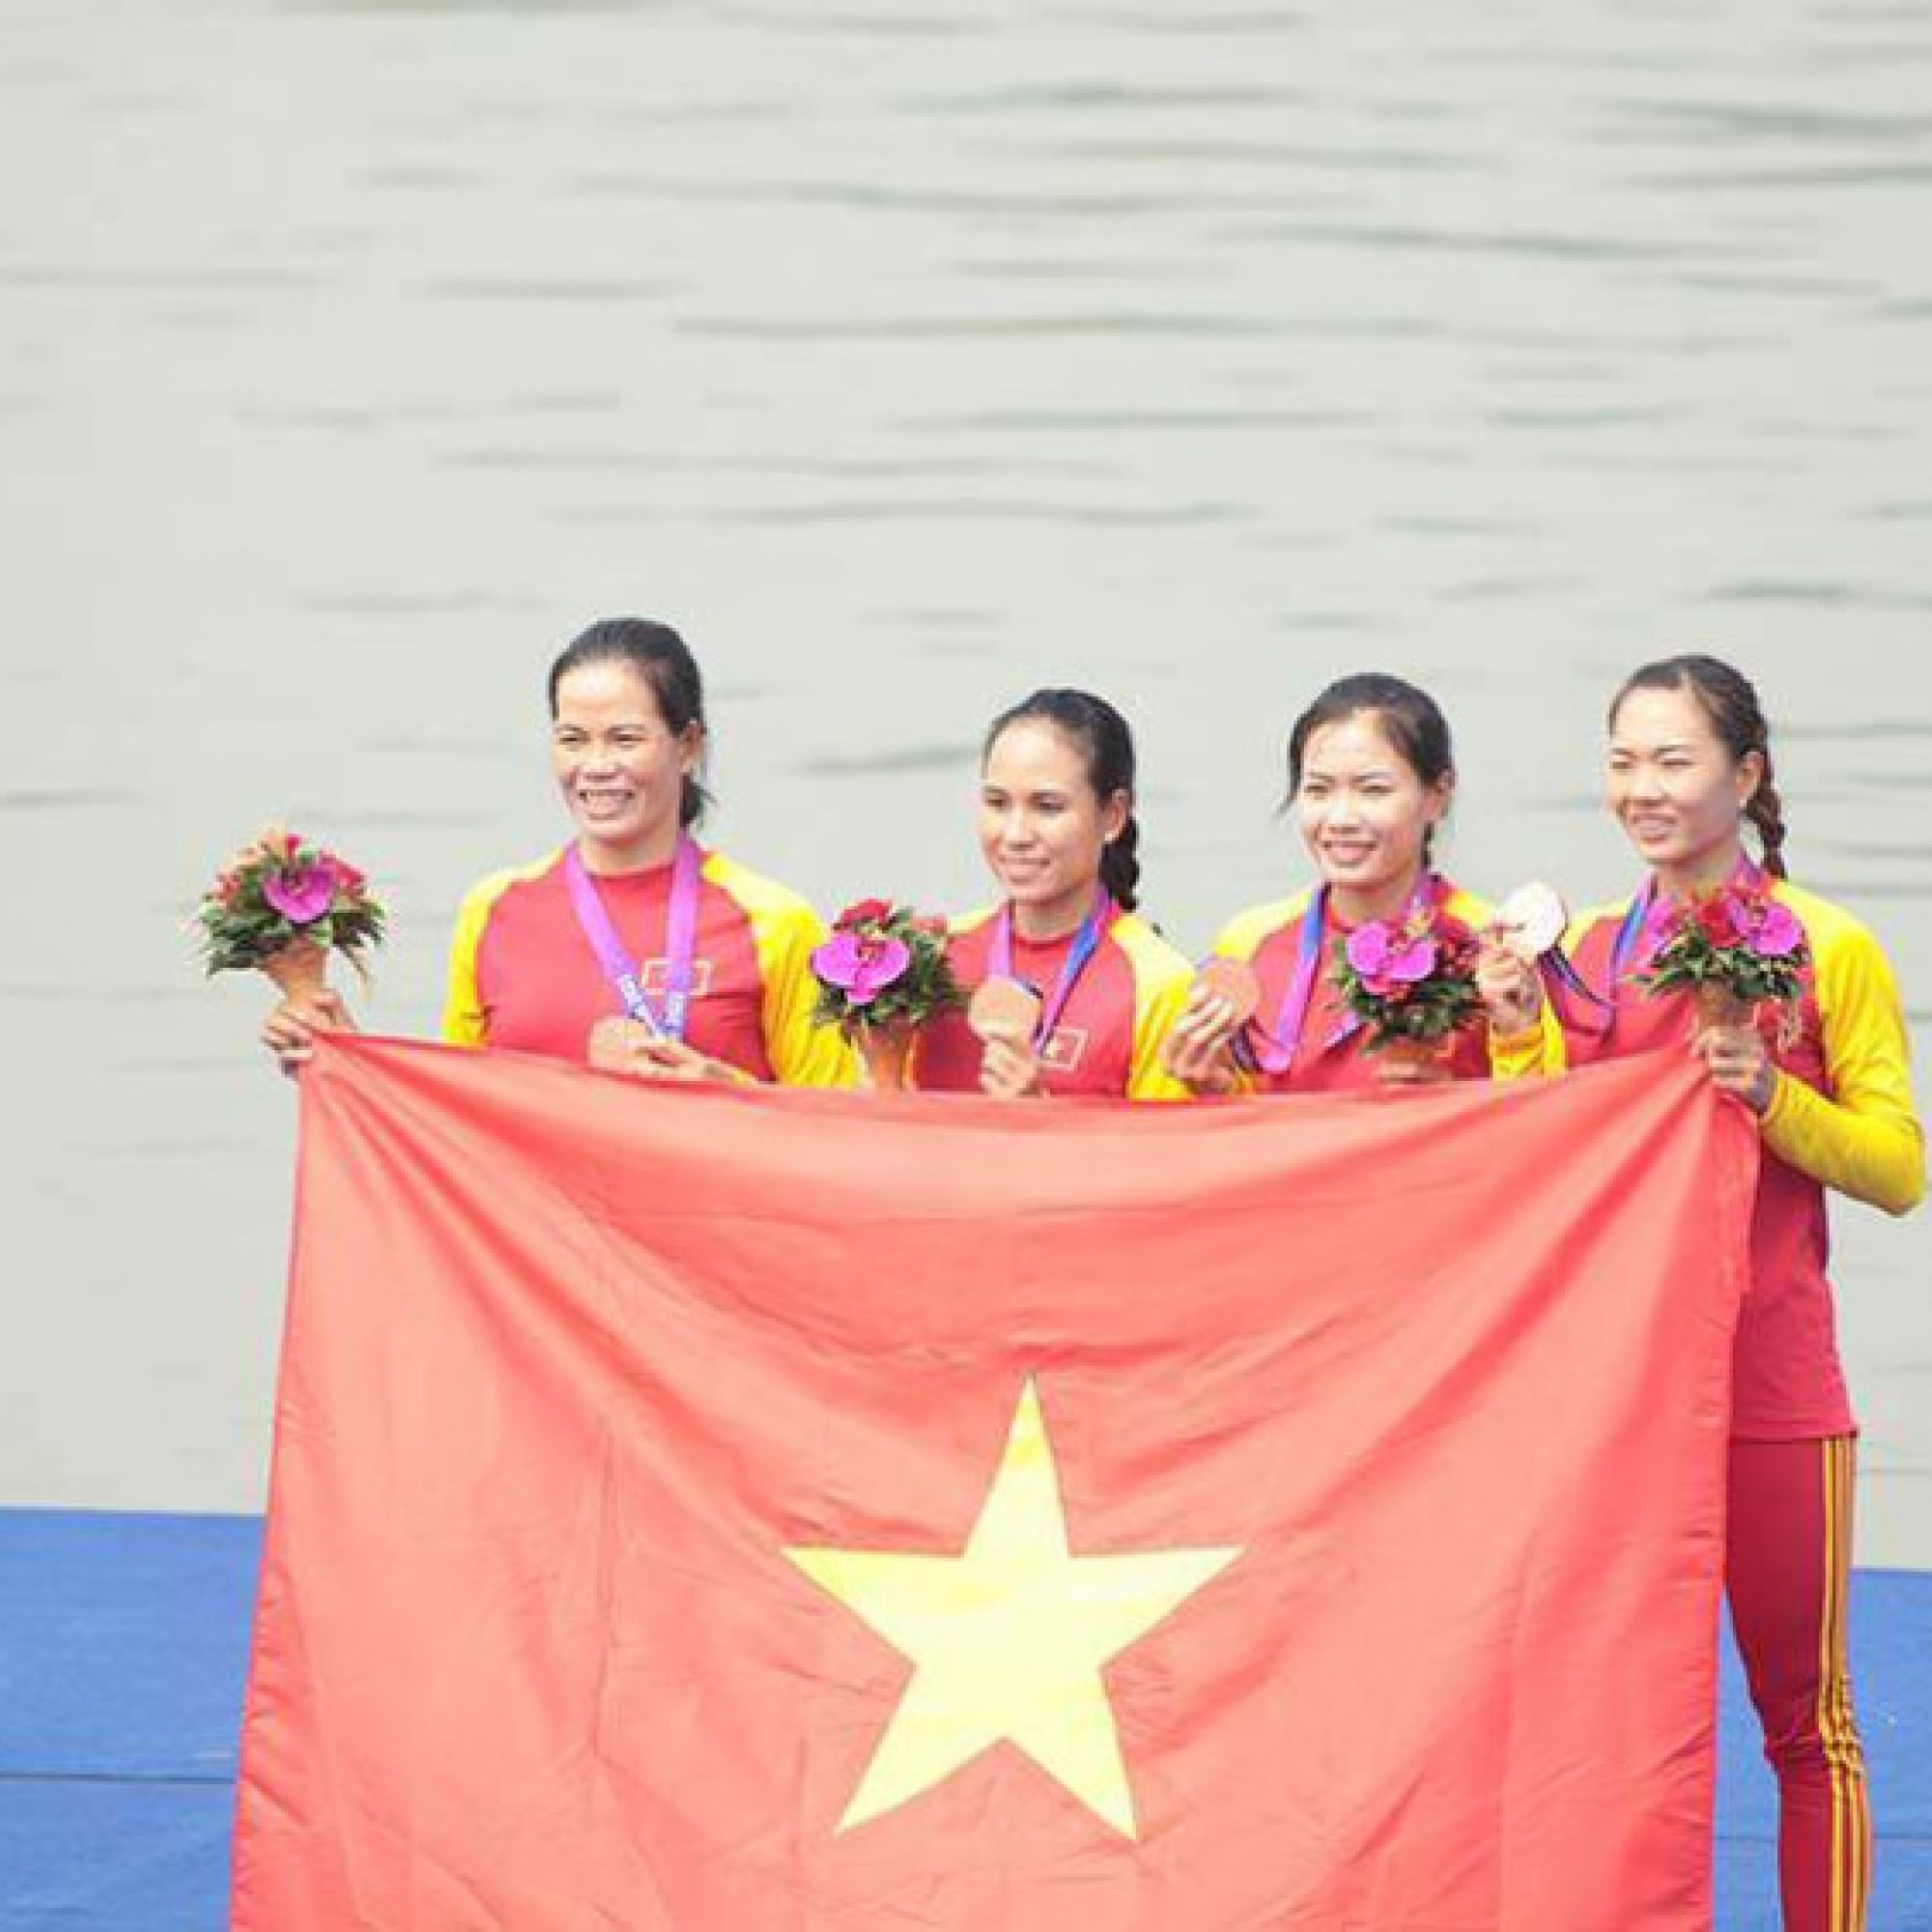  - Trực tiếp đoàn Việt Nam thi đấu ASIAD ngày 24/9: Rowing mang về huy chương đầu tiên, trông chờ Taekwondo